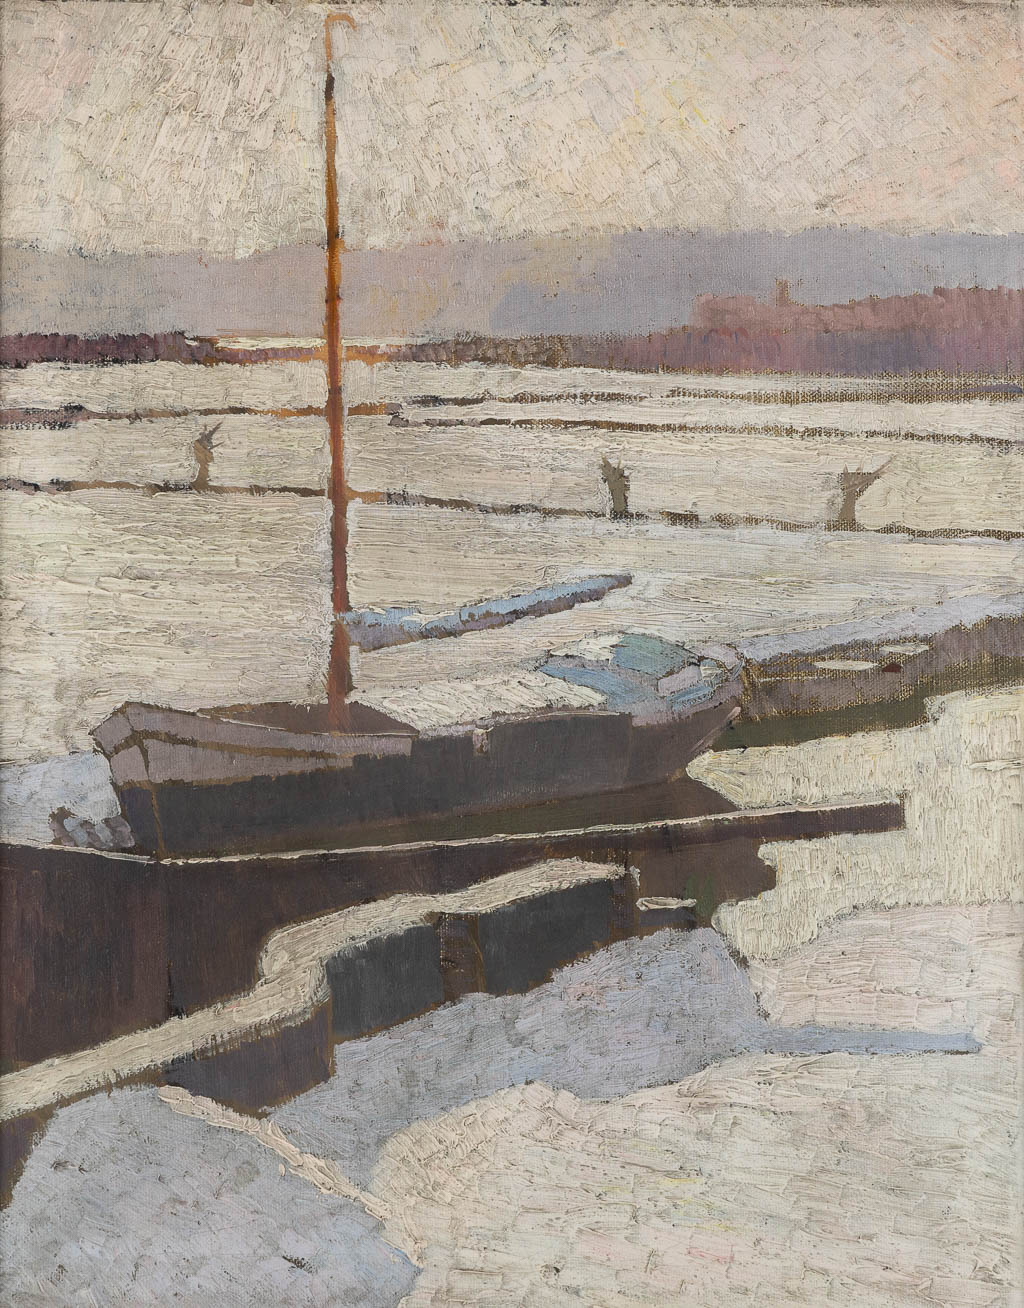  Tony VAN OS (1886-1945) 'Sneeuwlandschap met een schip'.